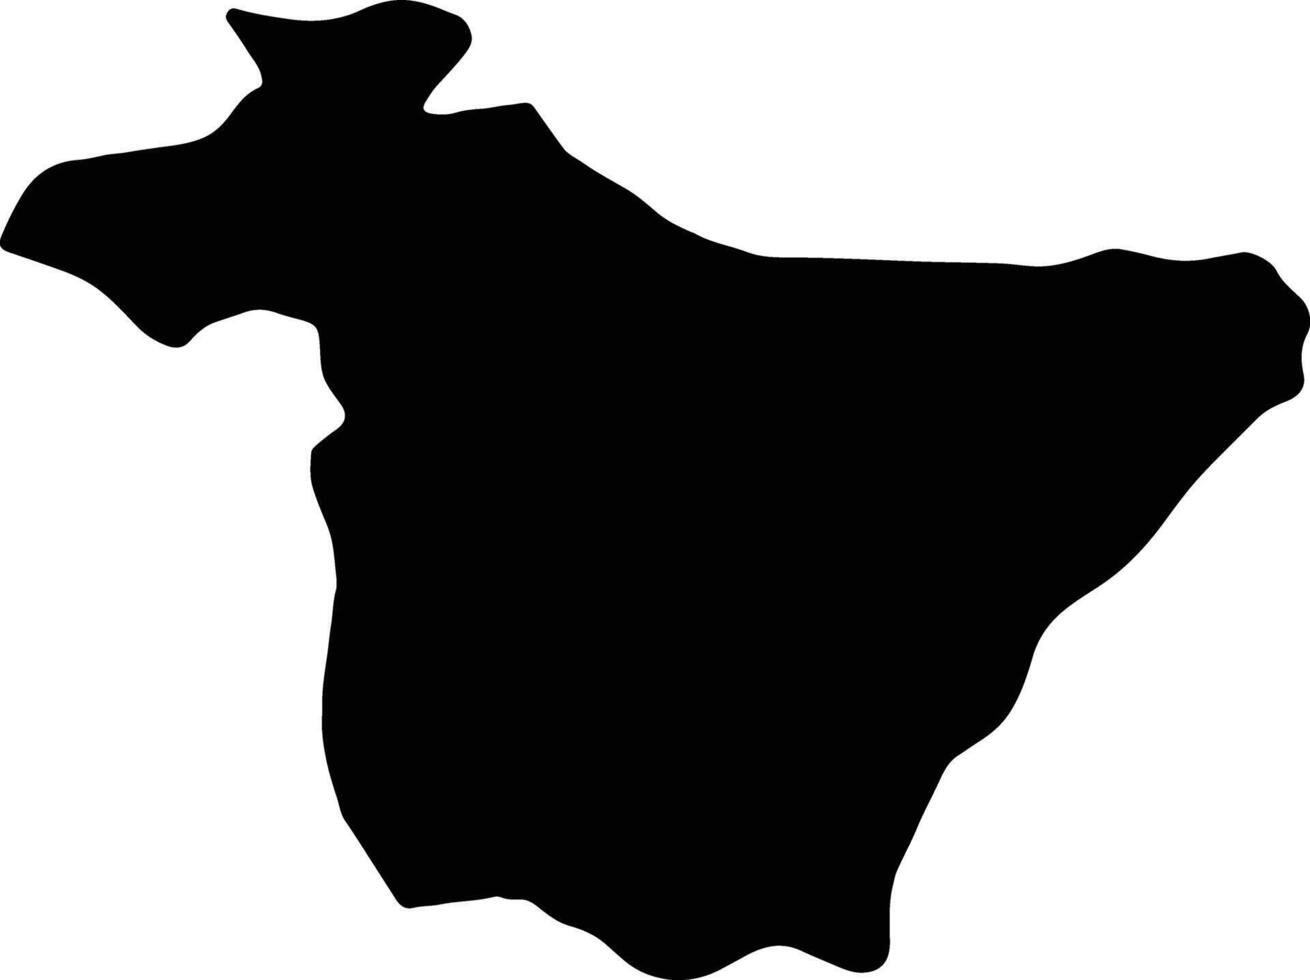 bouira Argelia silueta mapa vector